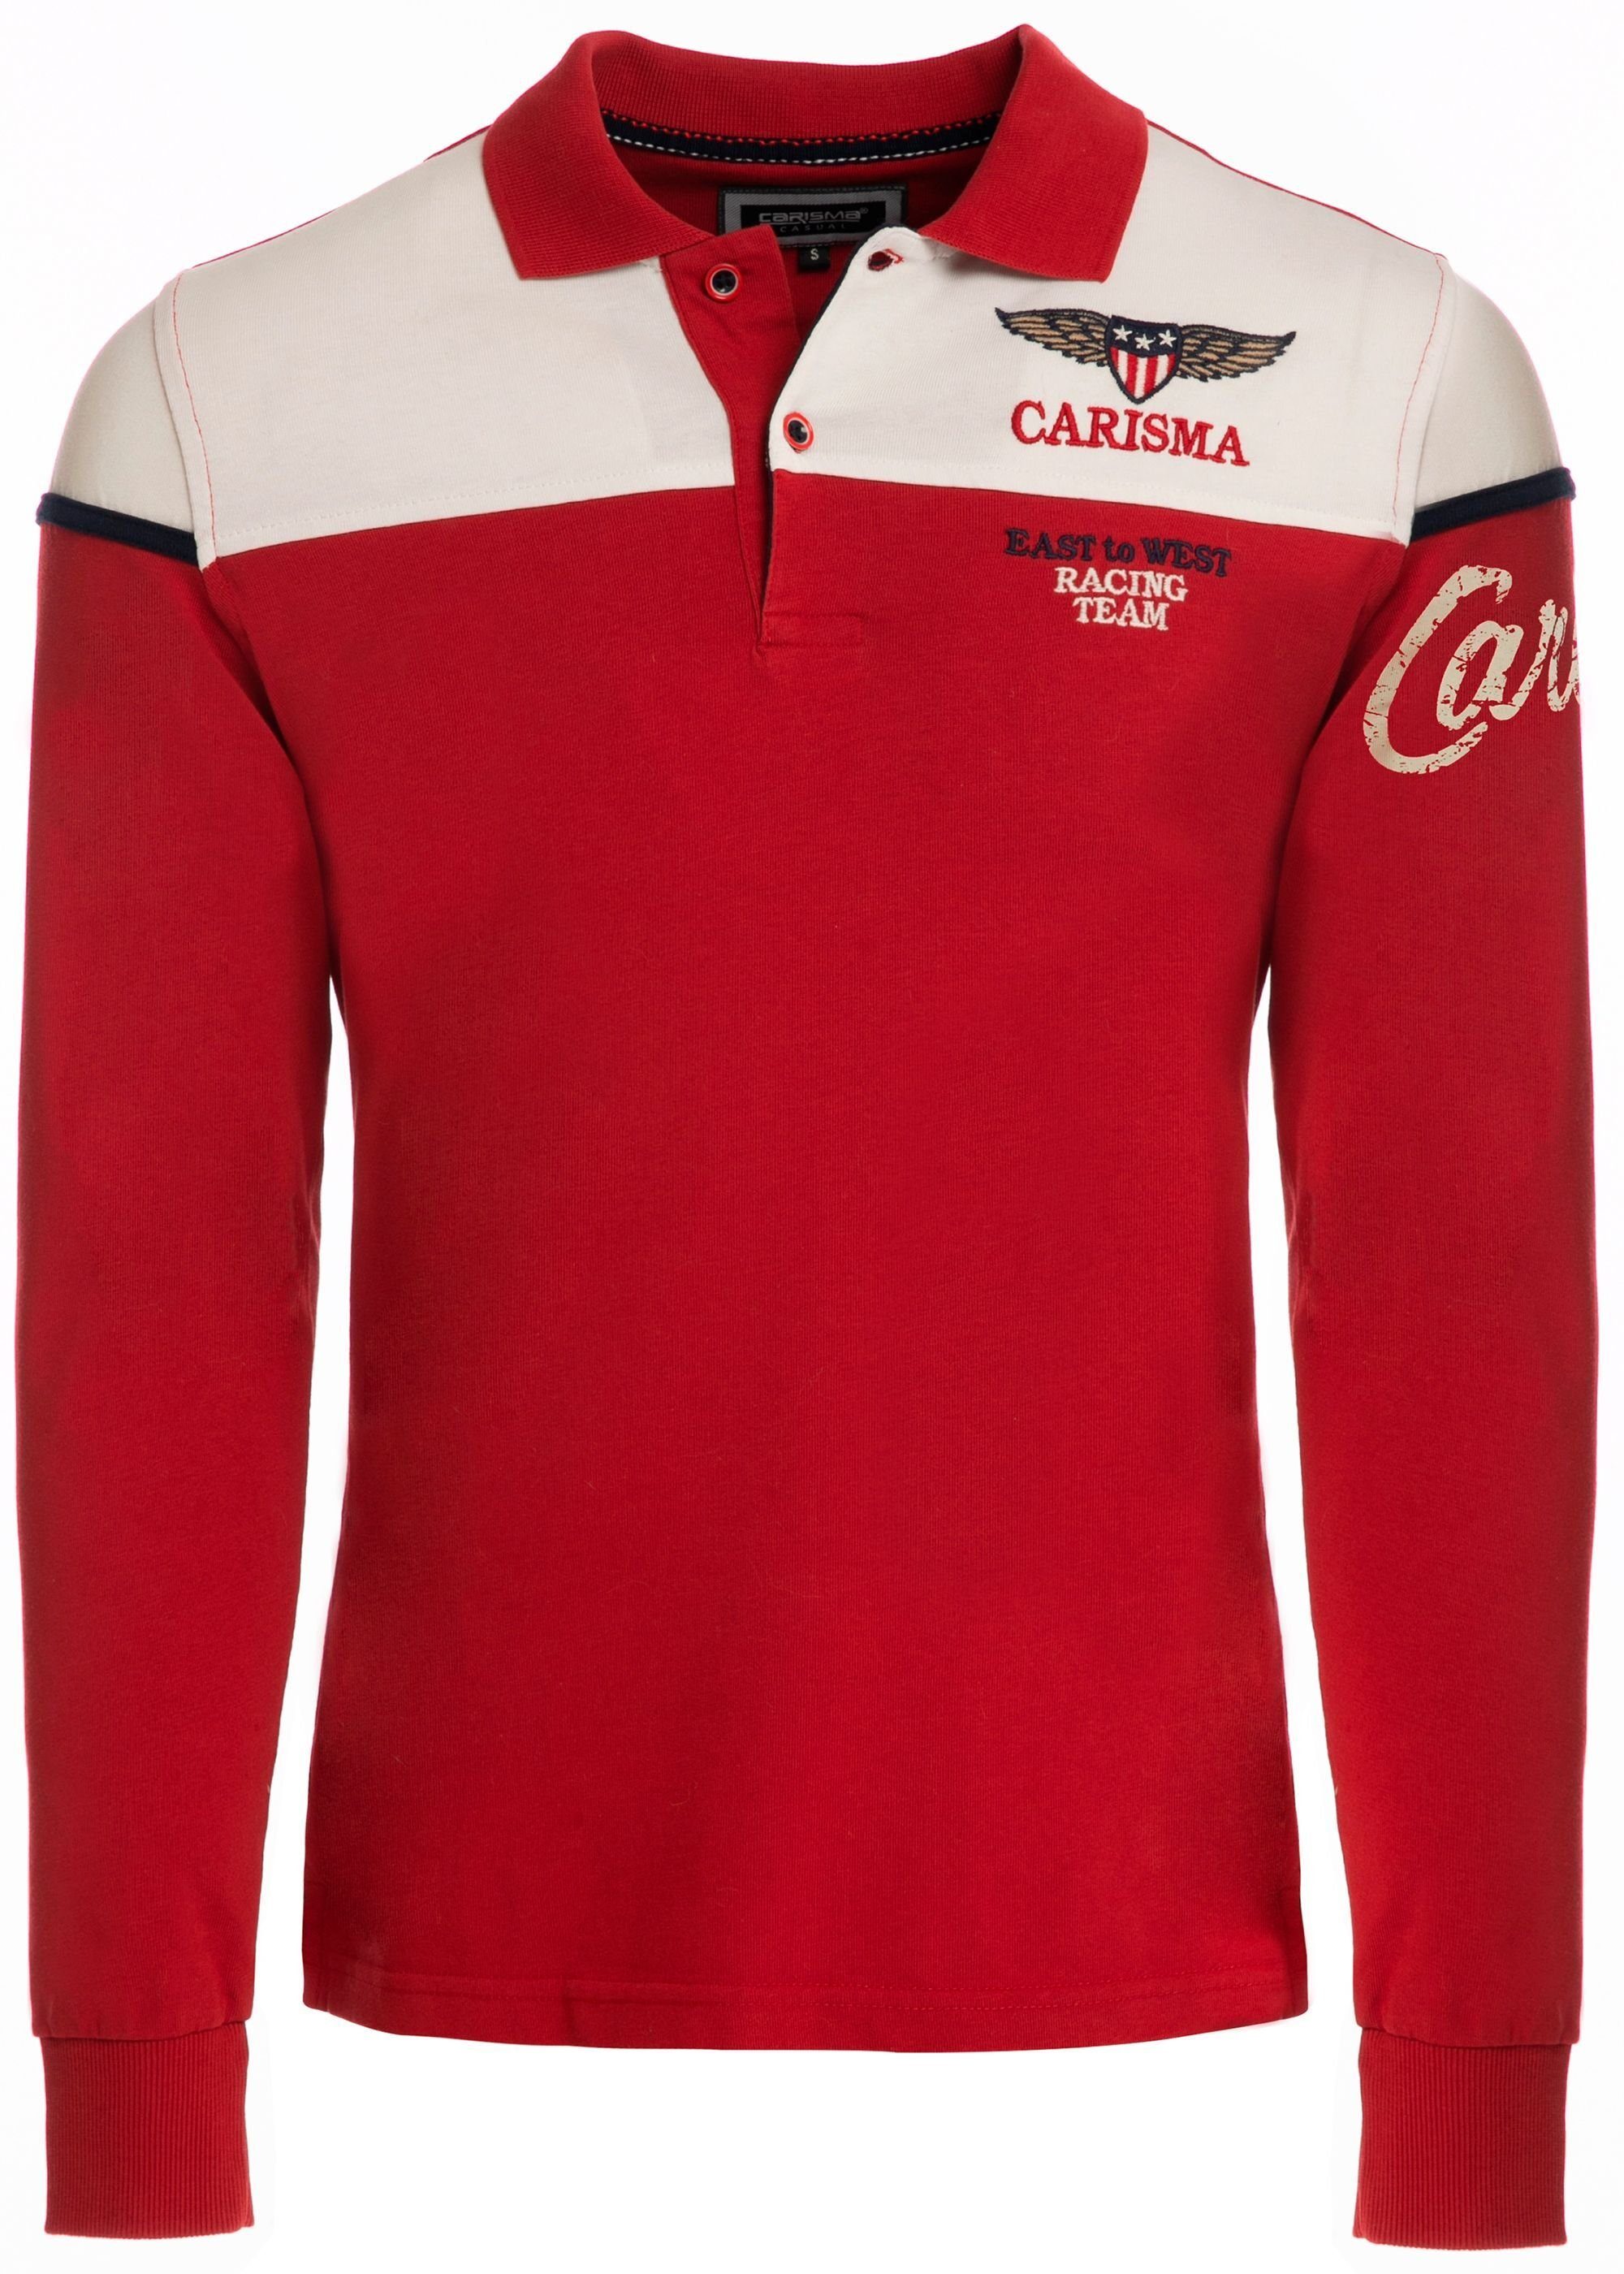 CARISMA Poloshirt mit Stickerei Rugby Red Team